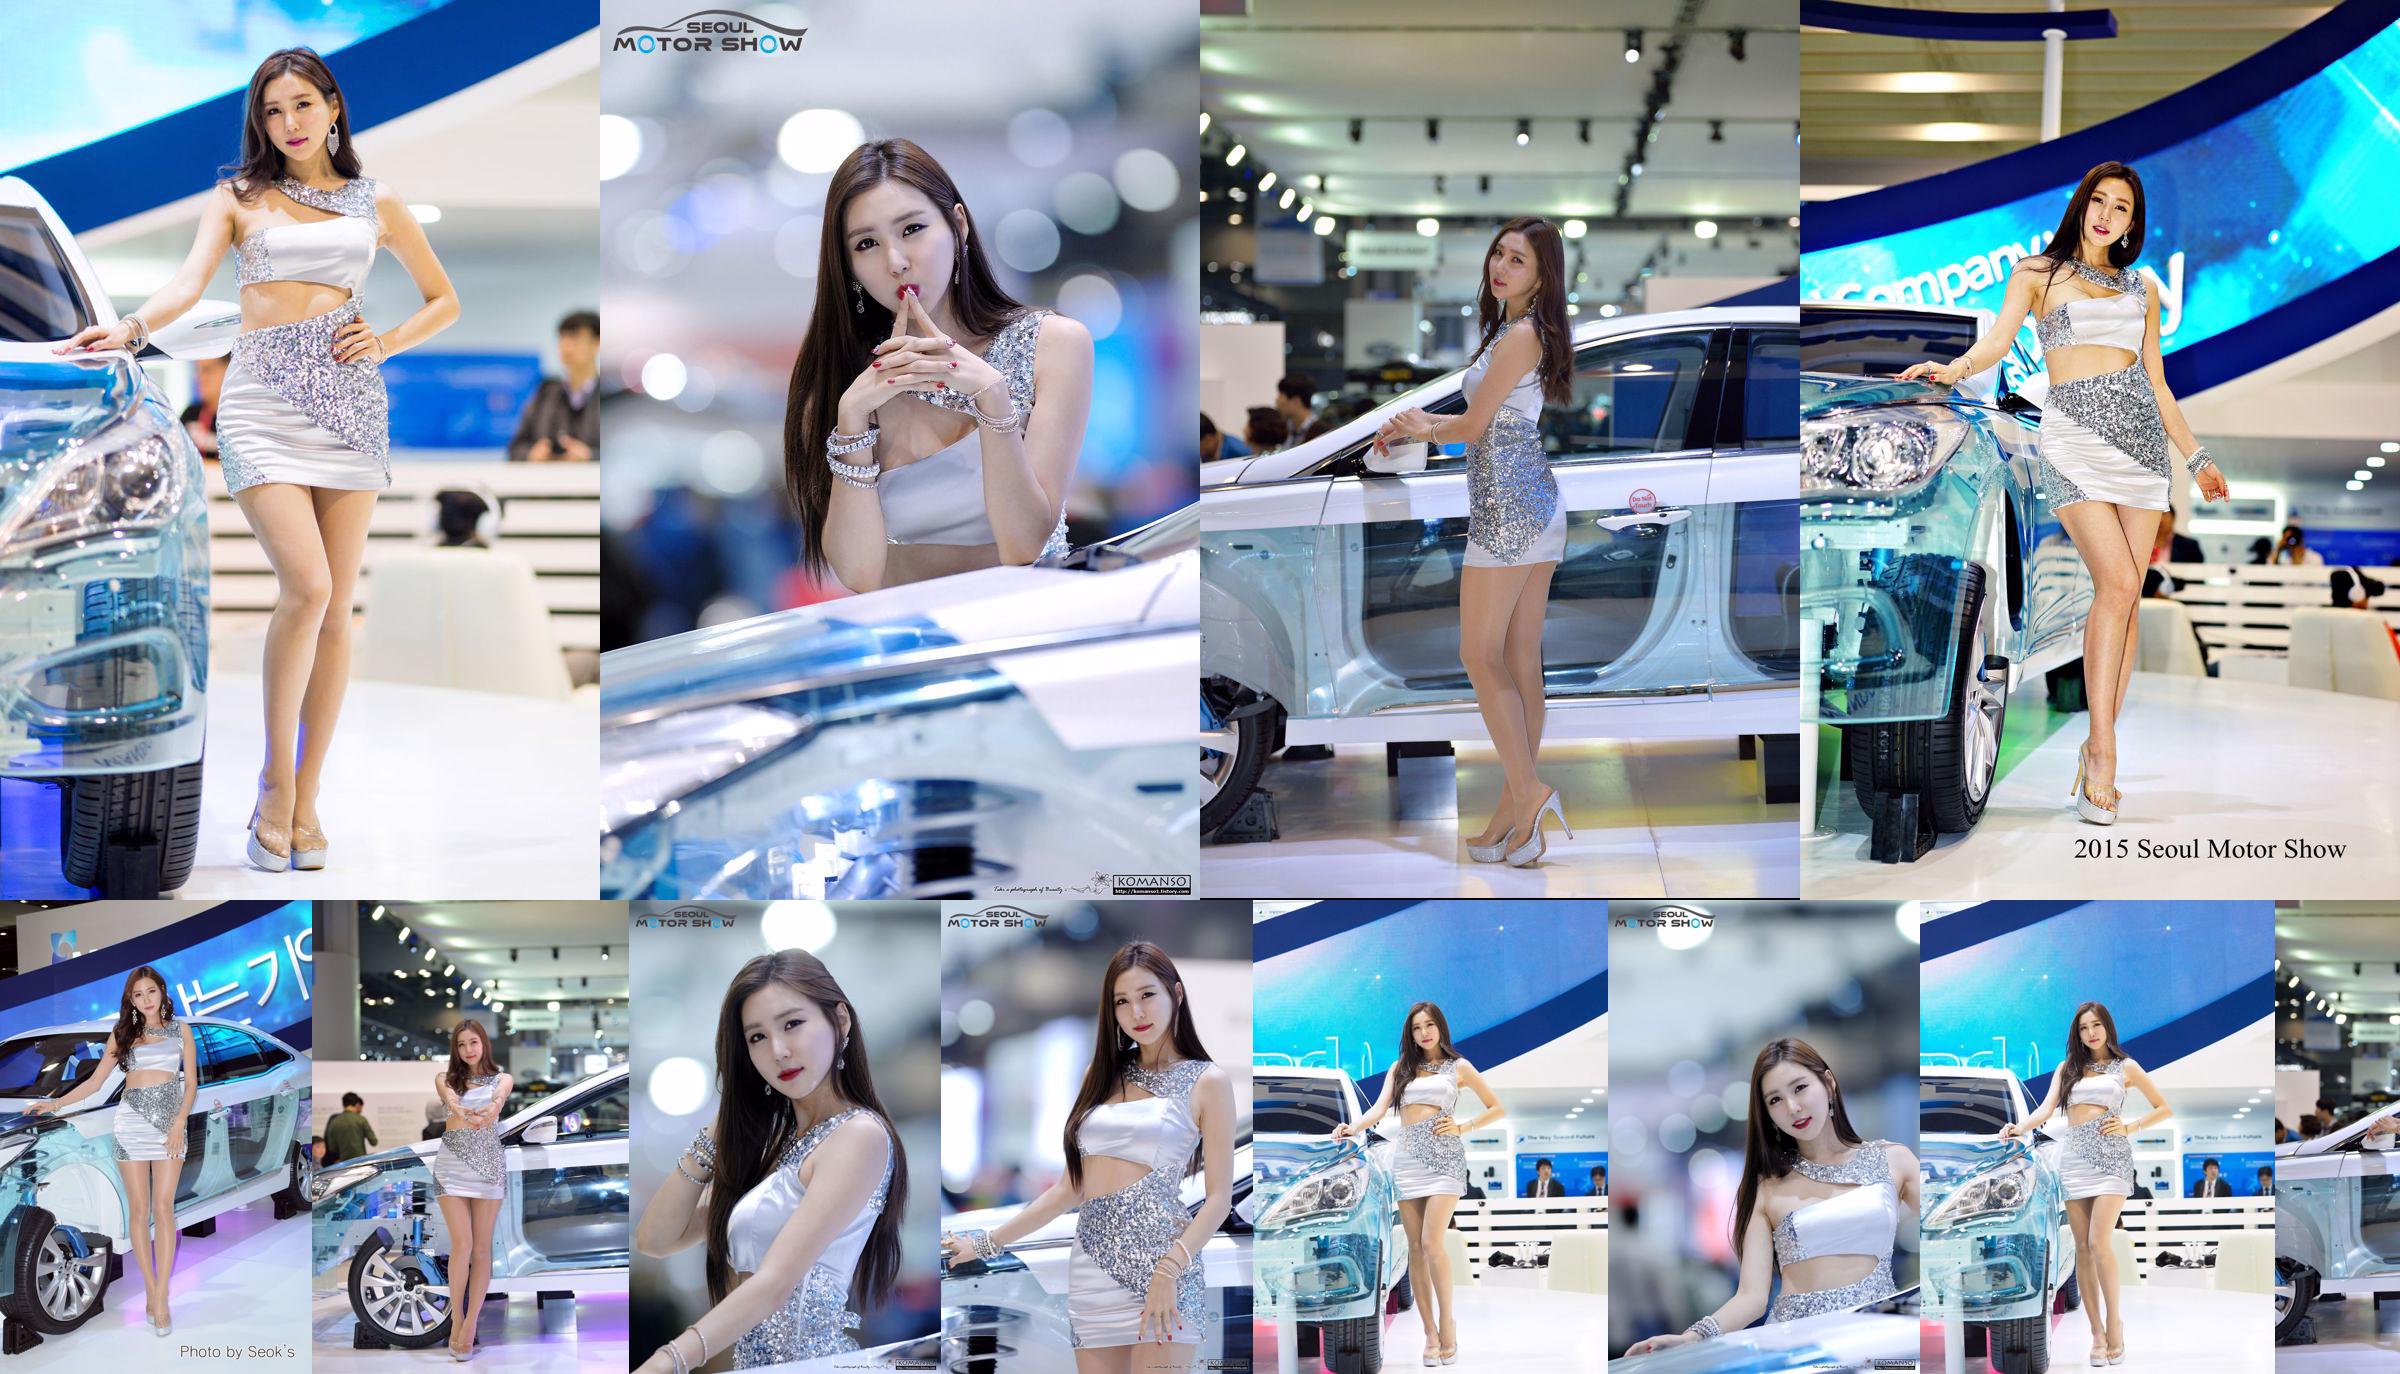 Modelo de carro coreano Choi Yujin-Auto Show Coleção de fotos No.875ef9 Página 9